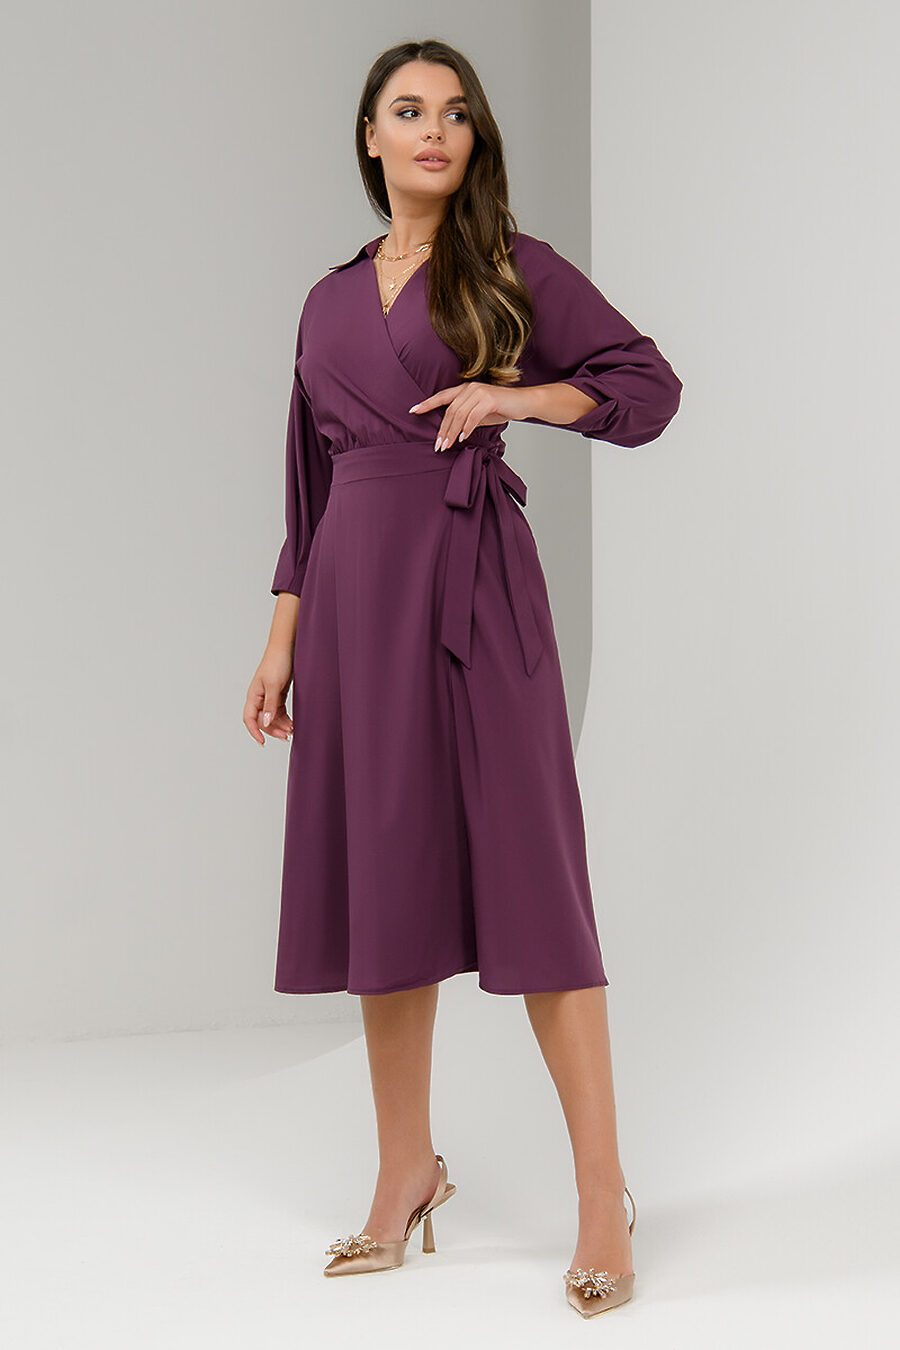 Платье для женщин 1001 DRESS 712359 купить оптом от производителя. Совместная покупка женской одежды в OptMoyo